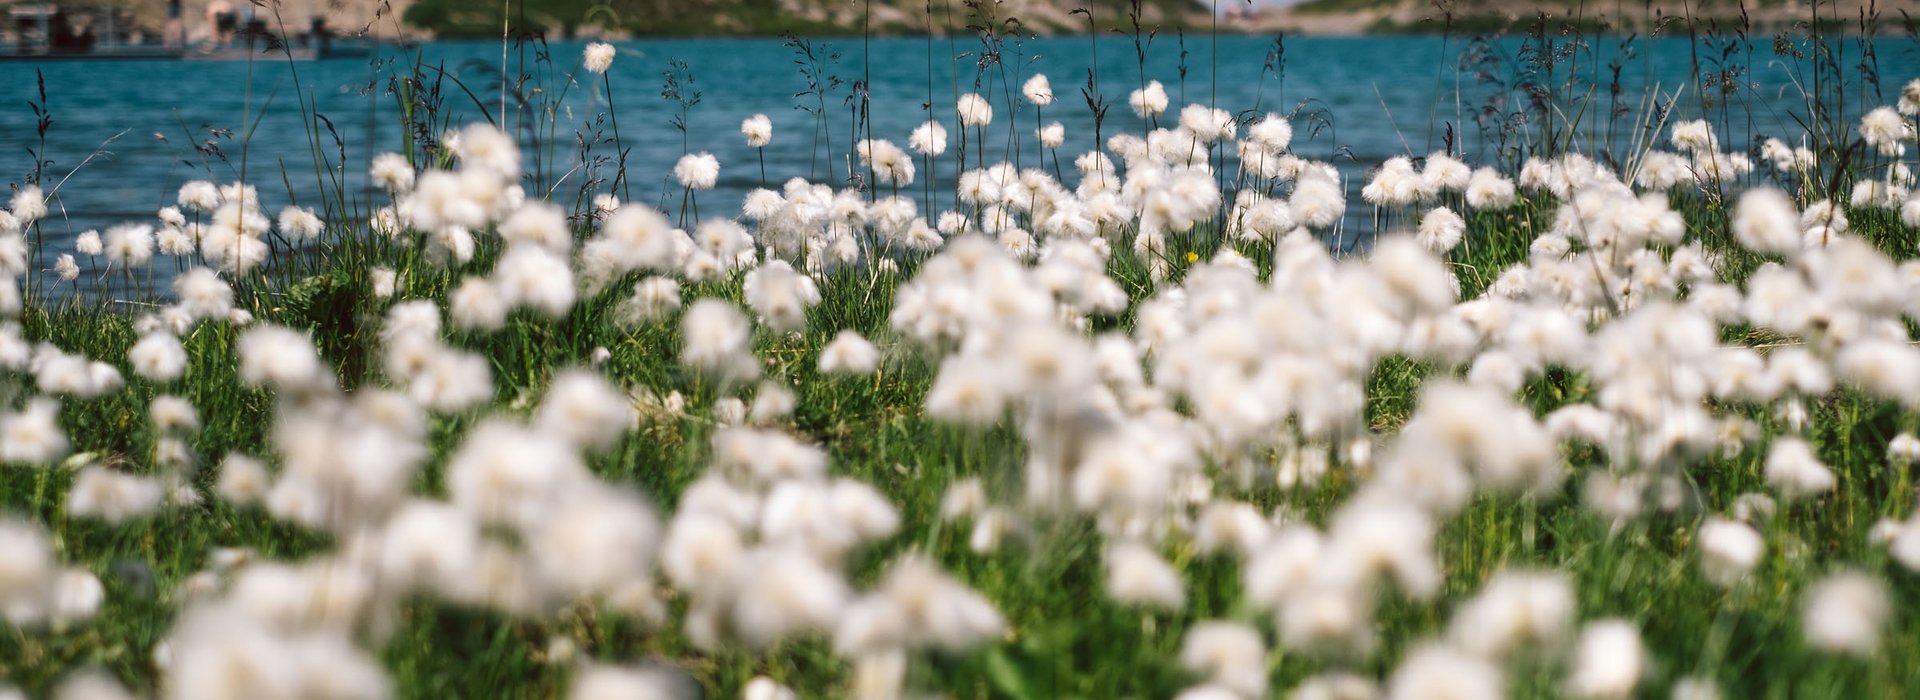 Ausblick auf eine weiße Blumenwiese mit dem Zürsersee im Hintergrund.